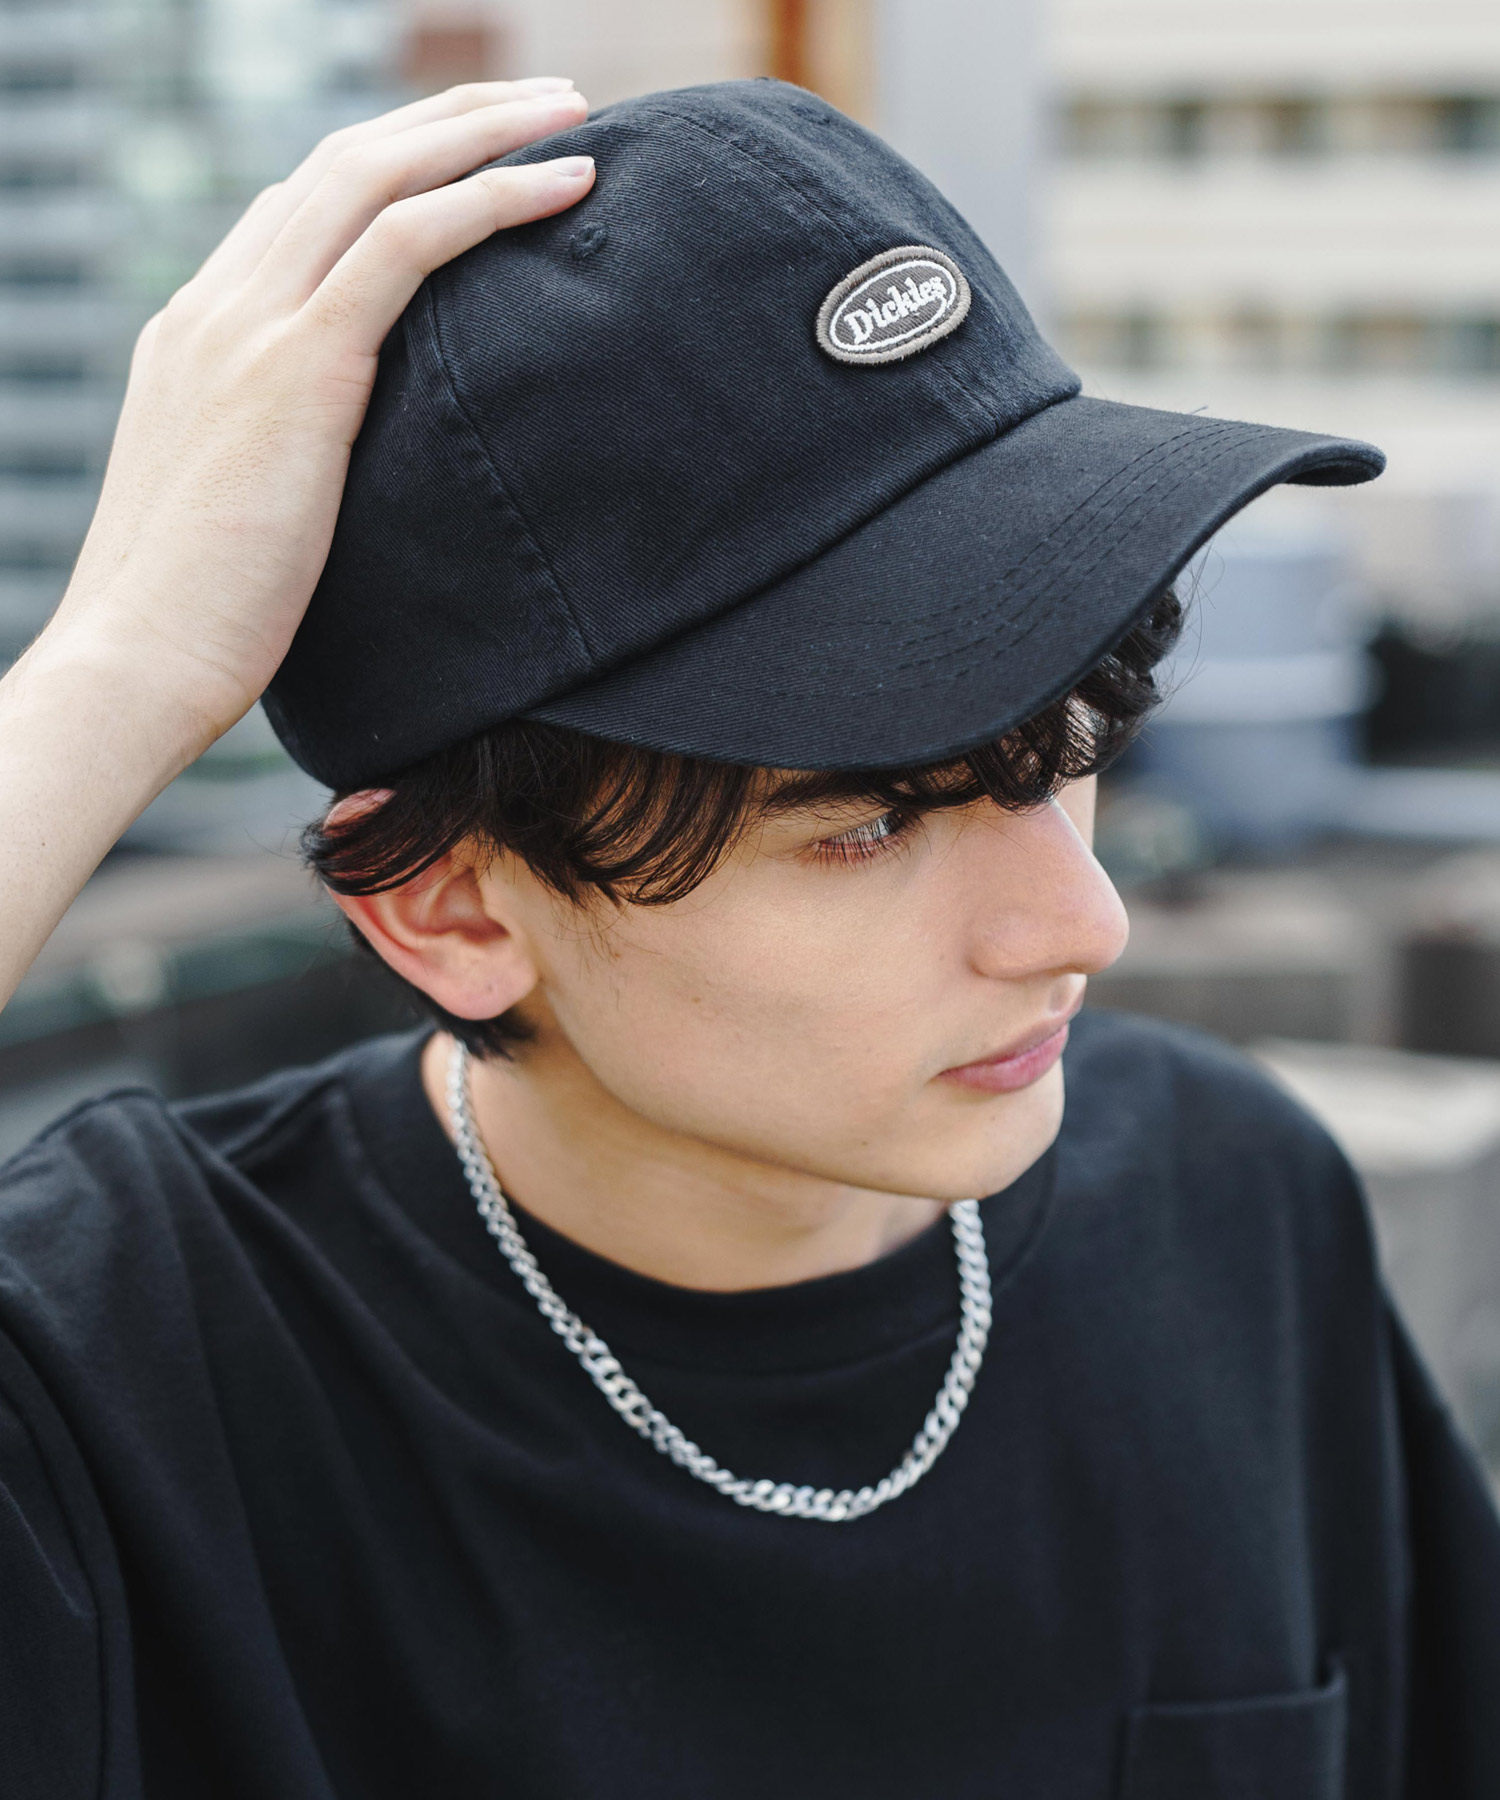 日本全国 送料無料 即購入OK メンズ キャップ 黒 ストリート ロック 帽子